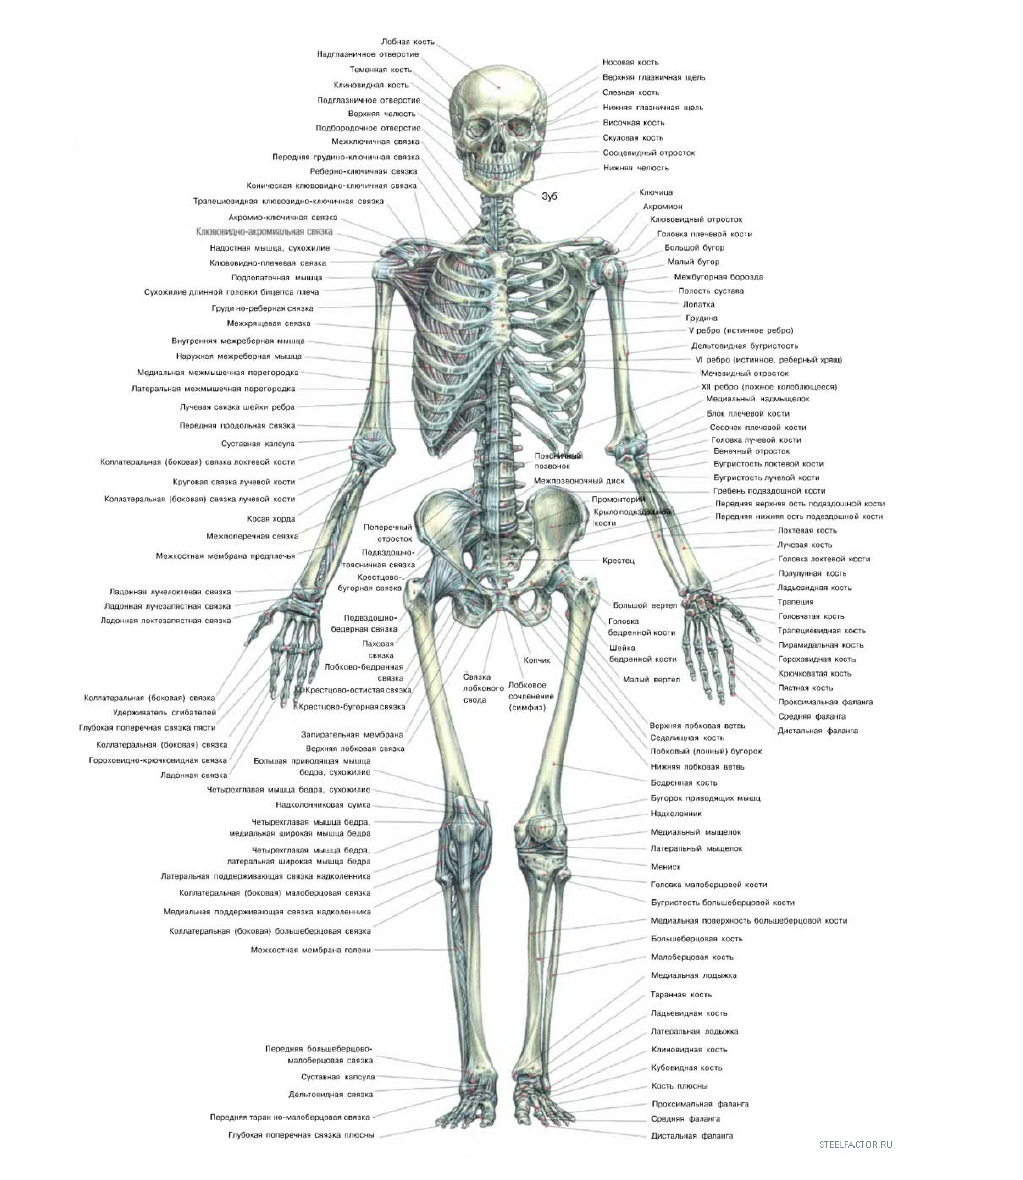 Скелет человека с описанием органов фото